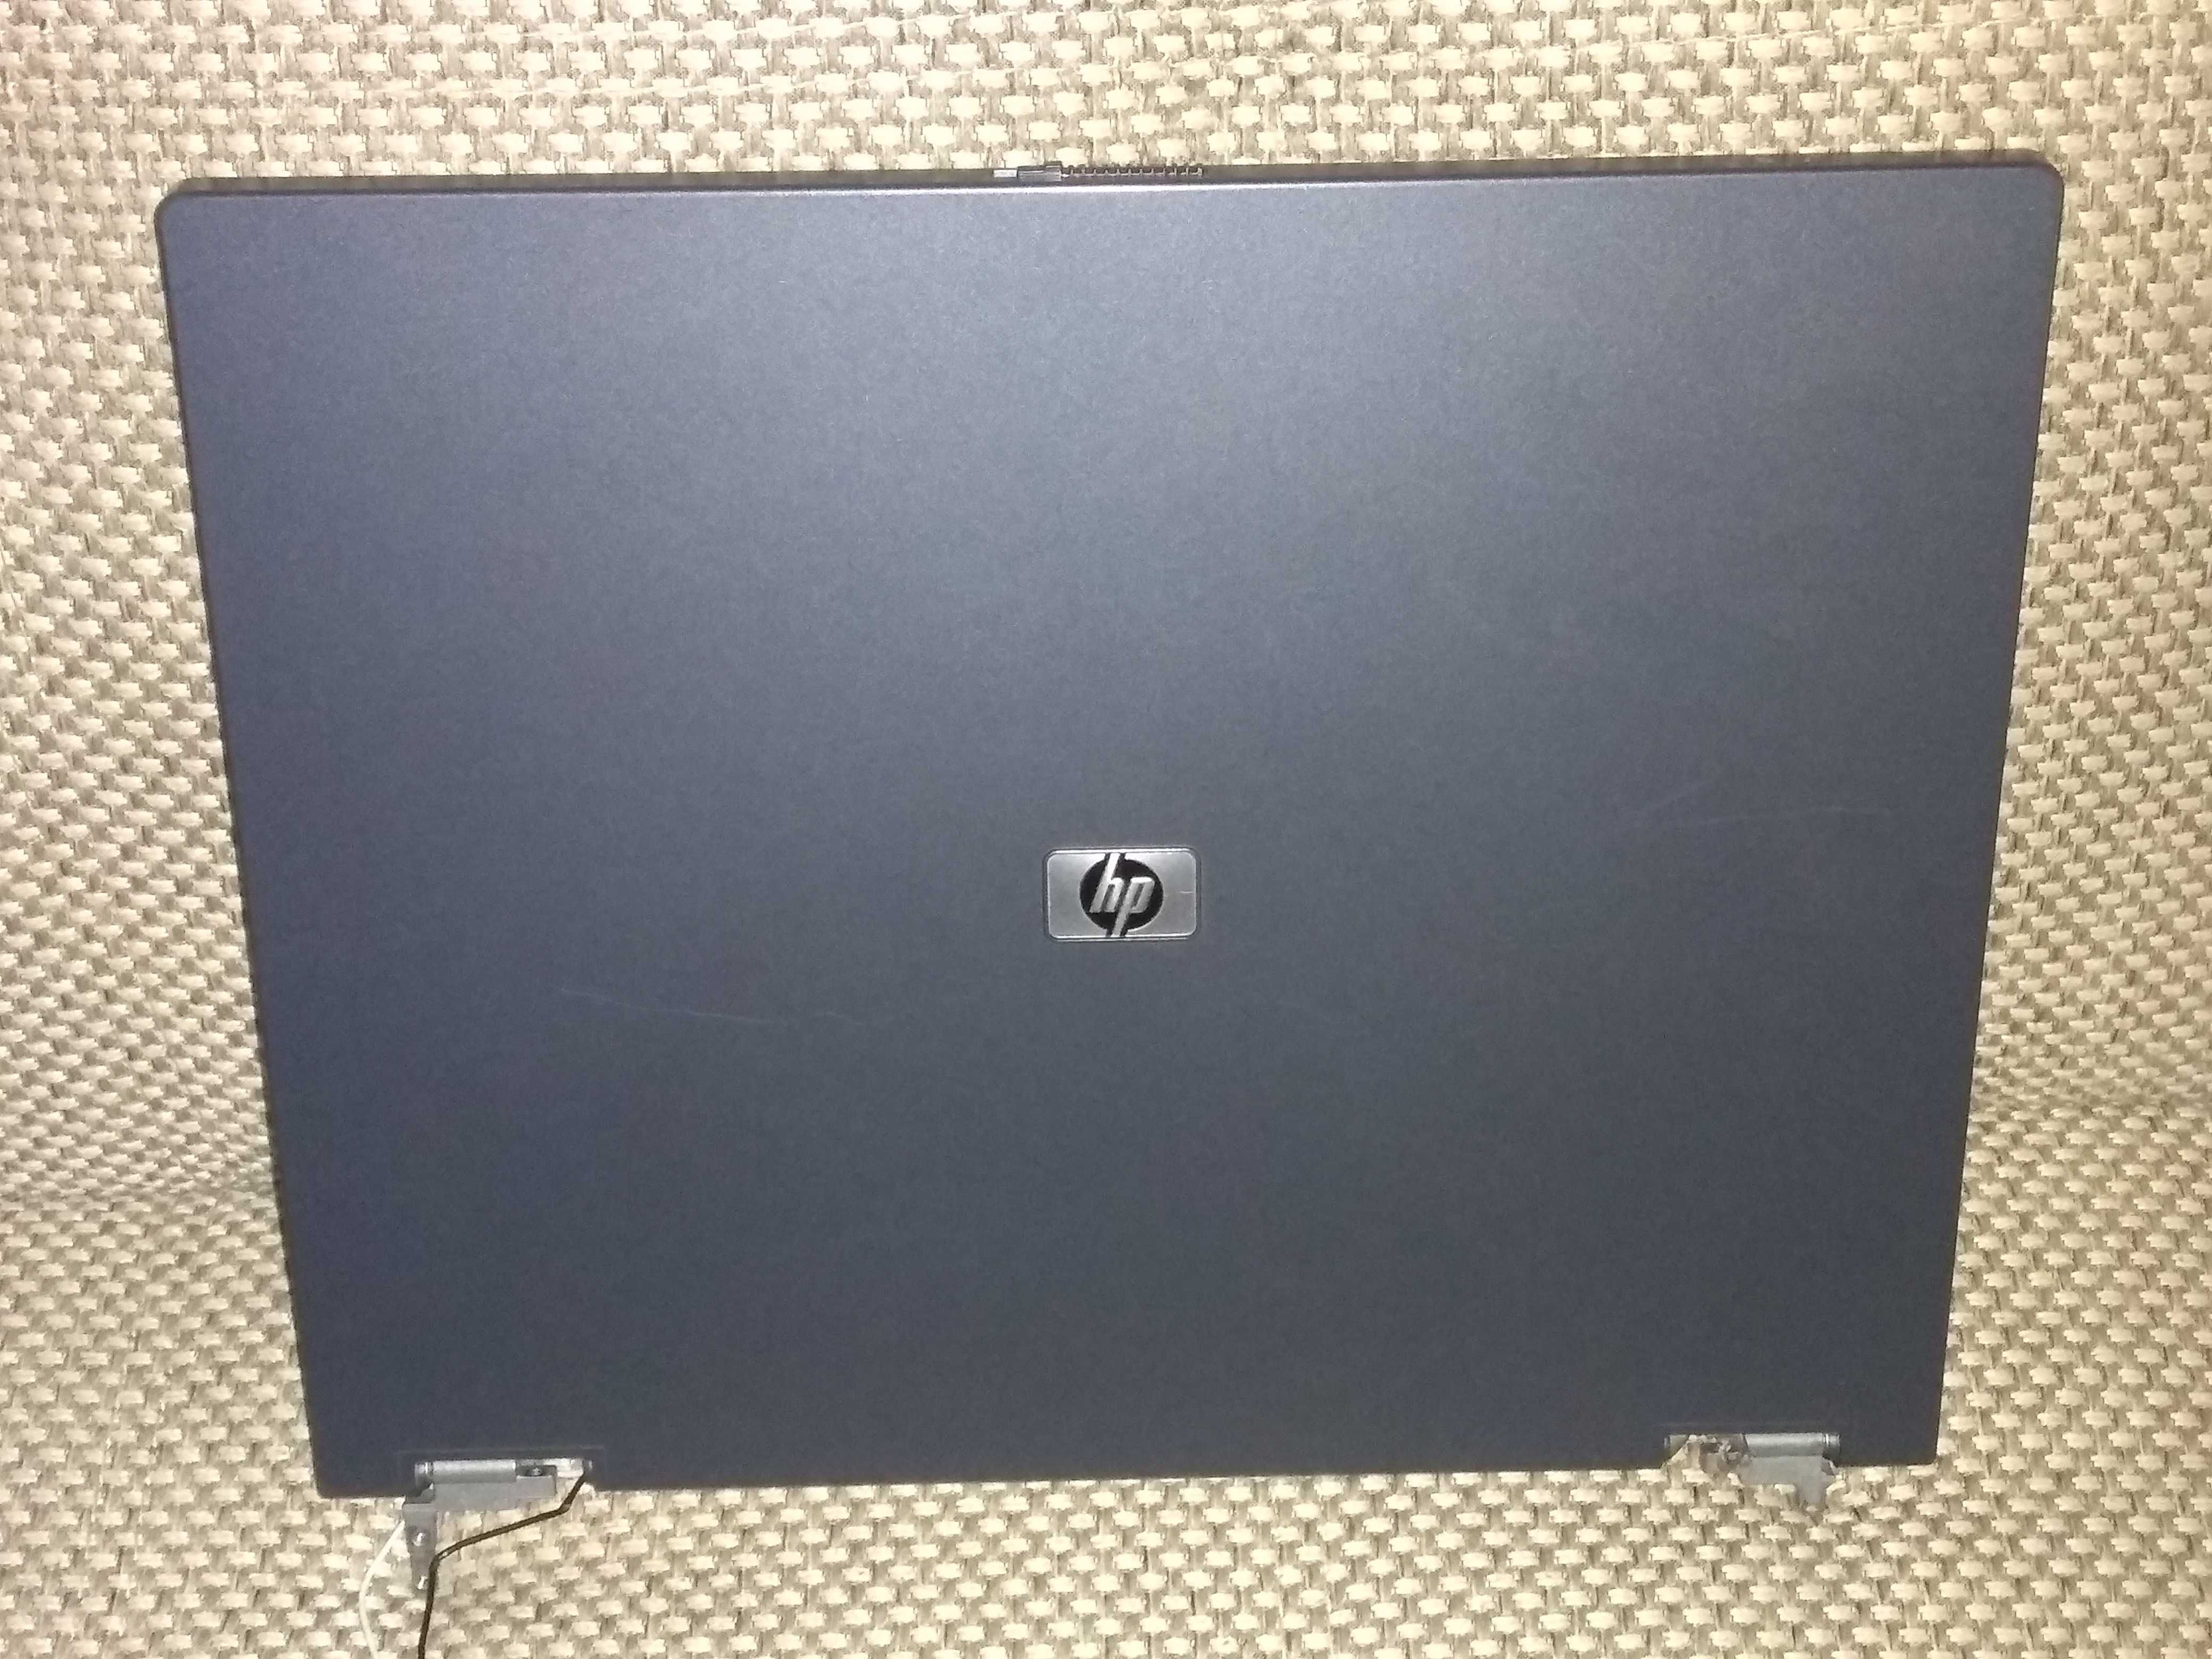 Продам монитор от ноутбука HP Compaq nc6320, nx6110, динамики